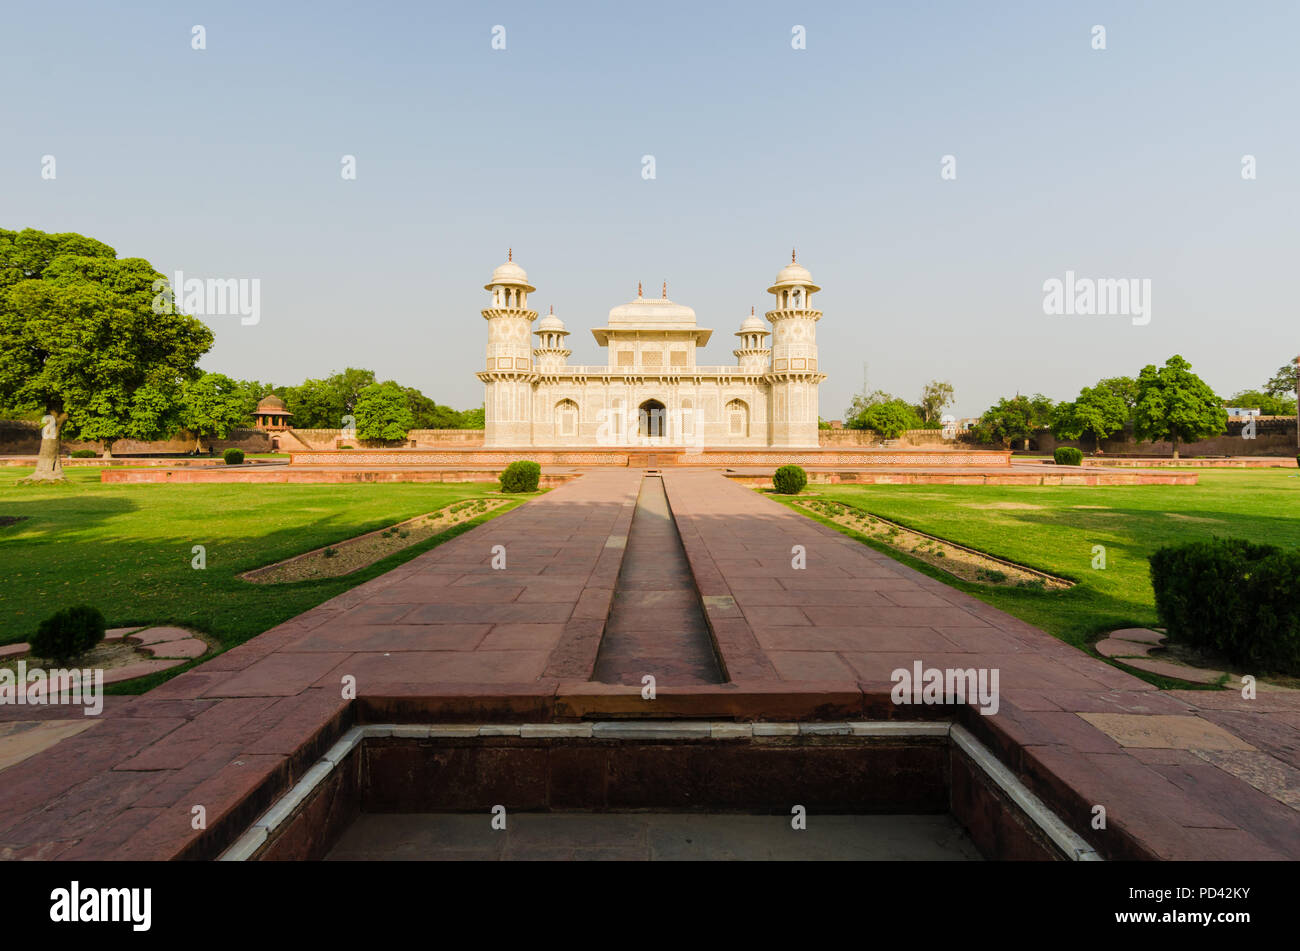 Vue panoramique de l'ancien mausolée d'Itimad Ud Daulah tombe, un édifice du patrimoine de l'Unesco à Agra, en Inde, avec des liens d'architecture au Taj Mahal. Banque D'Images